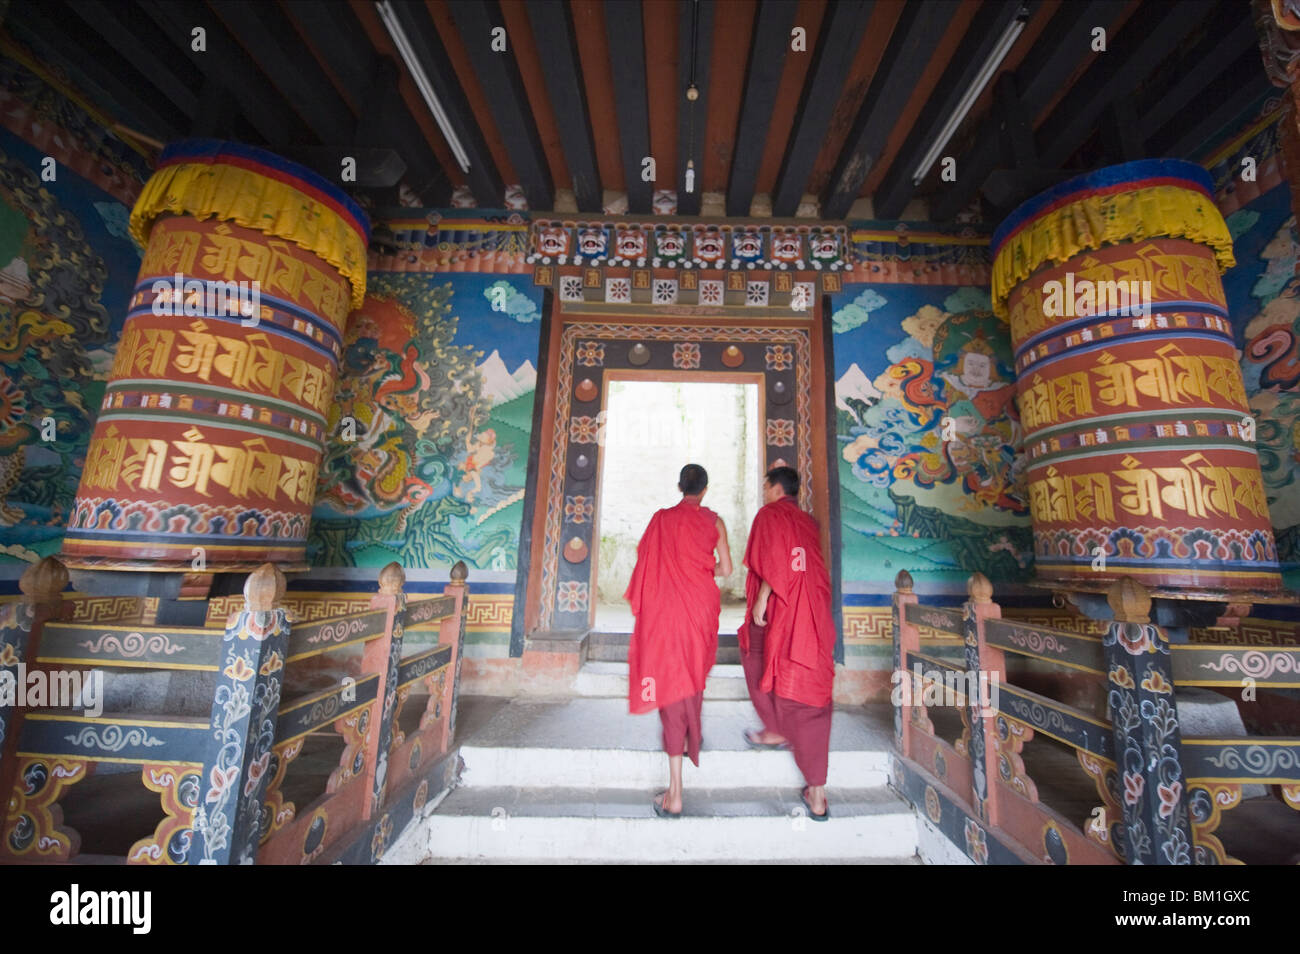 Quelques moines entre roues de prière à Trongsa Dzong (Chokhor Raptentse) datant de 1648, le Bhoutan Asie Banque D'Images